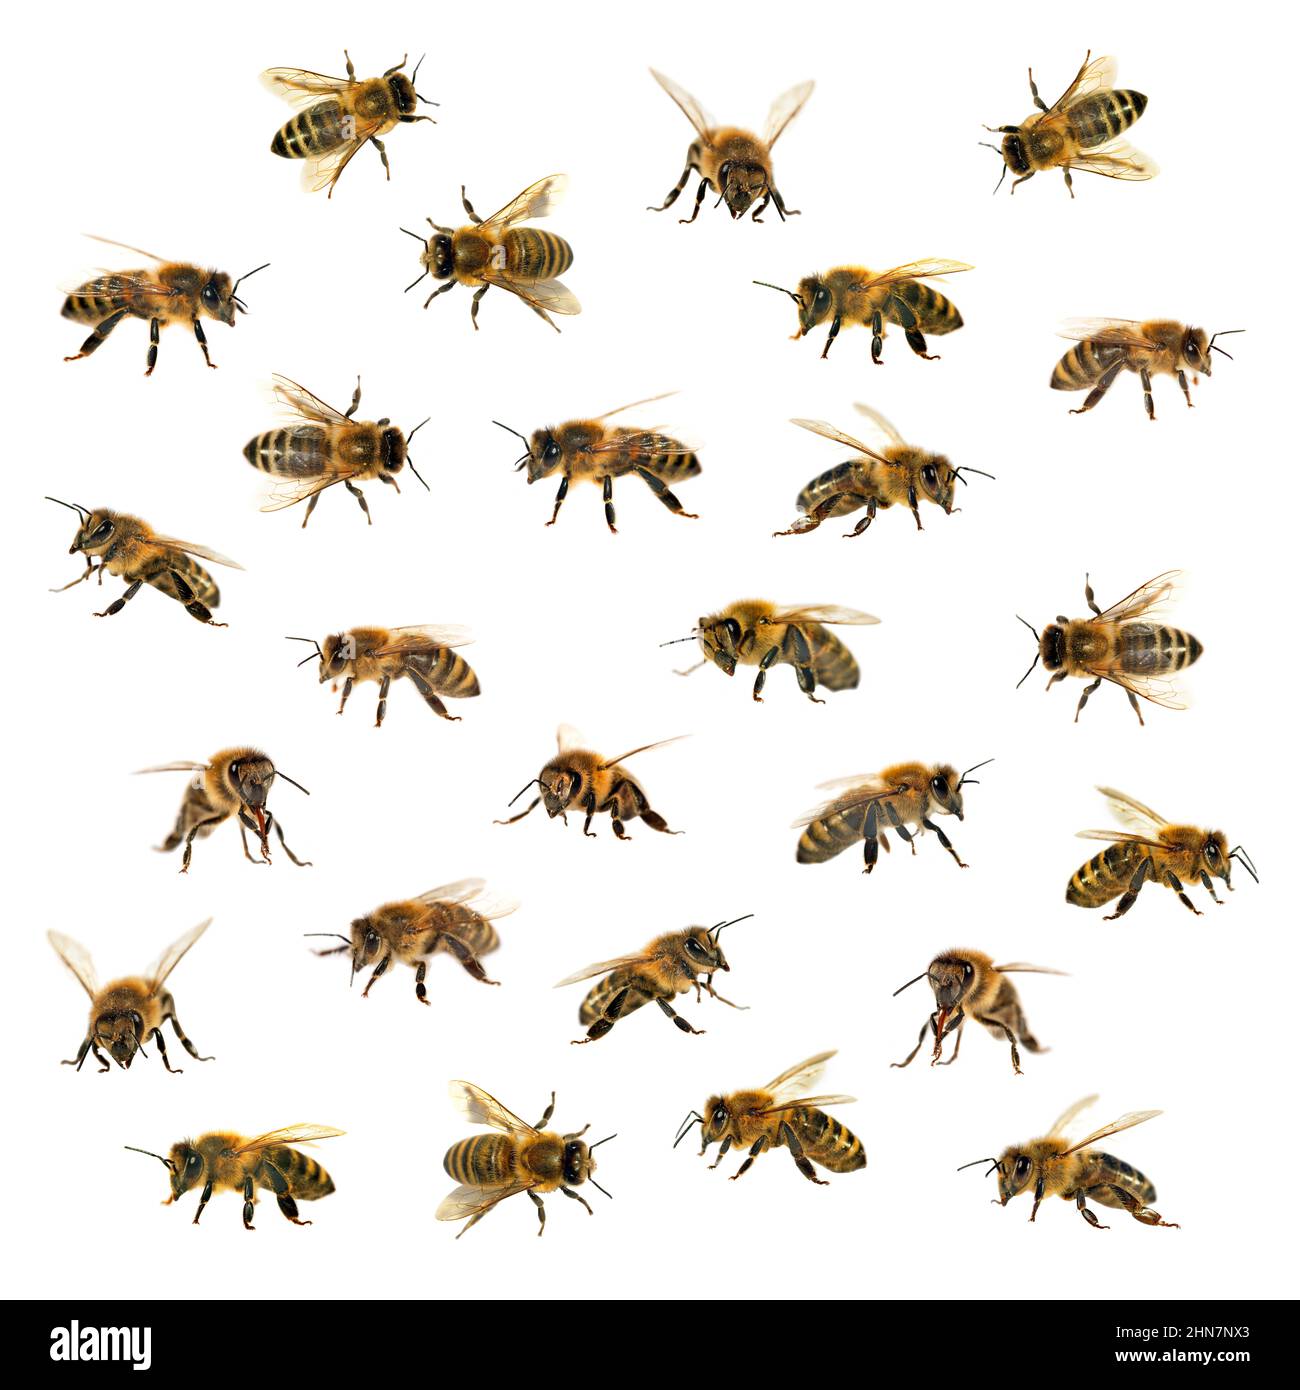 Grupo de abejas o abejas melíferas en Apis mellifera latina, abejas melíferas europeas o occidentales aisladas sobre fondo blanco, abejas melíferas doradas Foto de stock